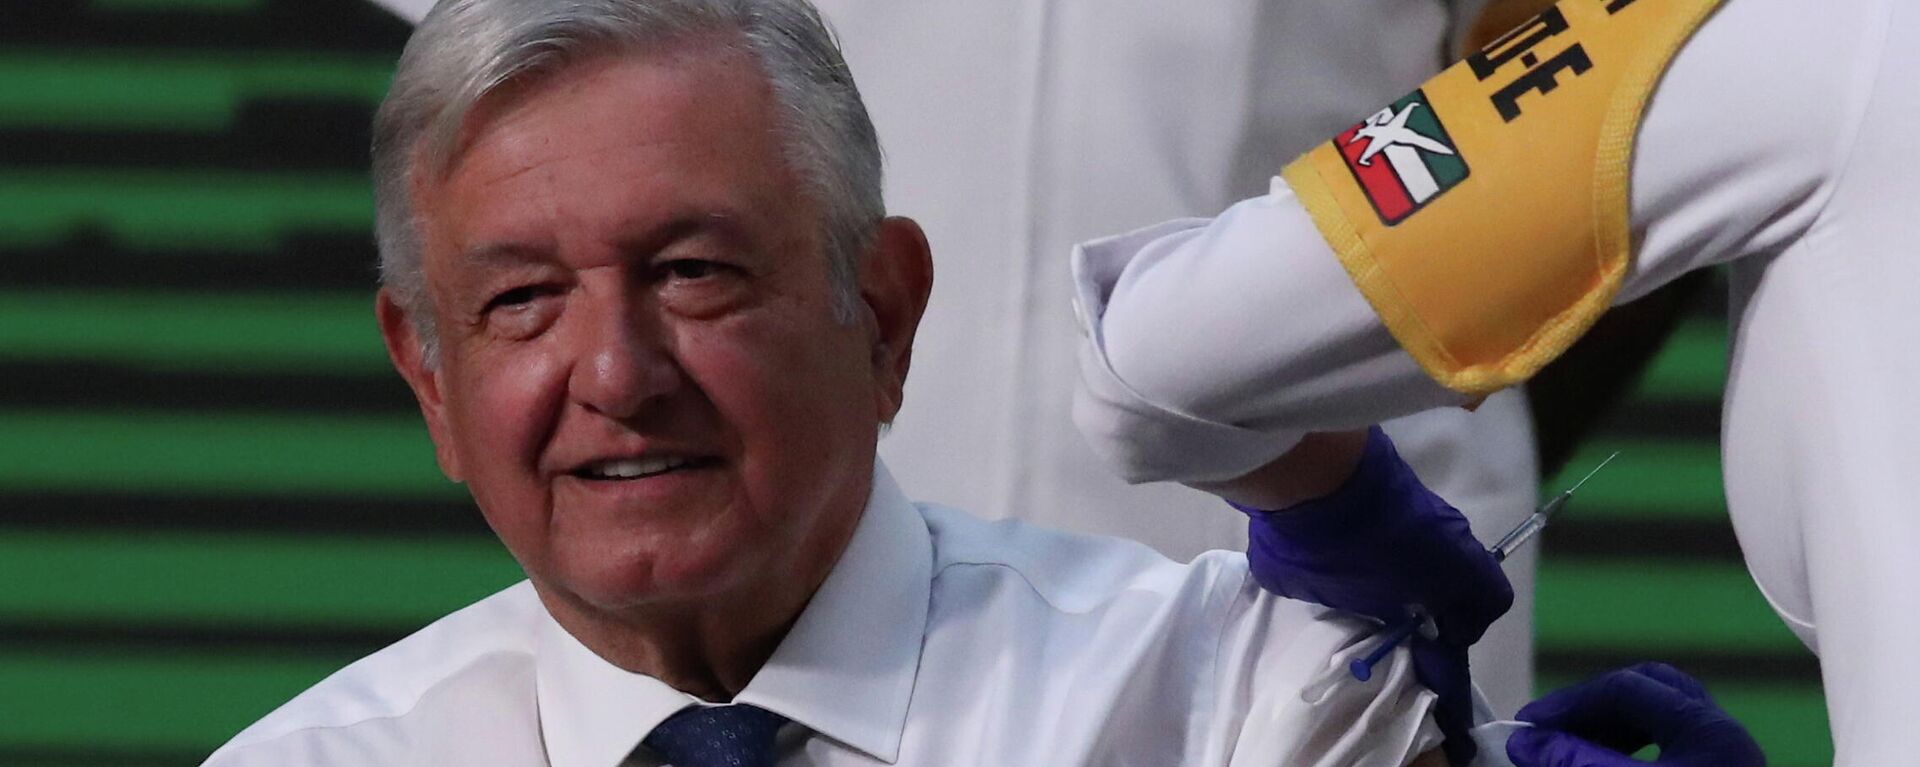 Vacunación del presidente de México, Andrés Manuel López Obrador - Sputnik Mundo, 1920, 20.04.2021